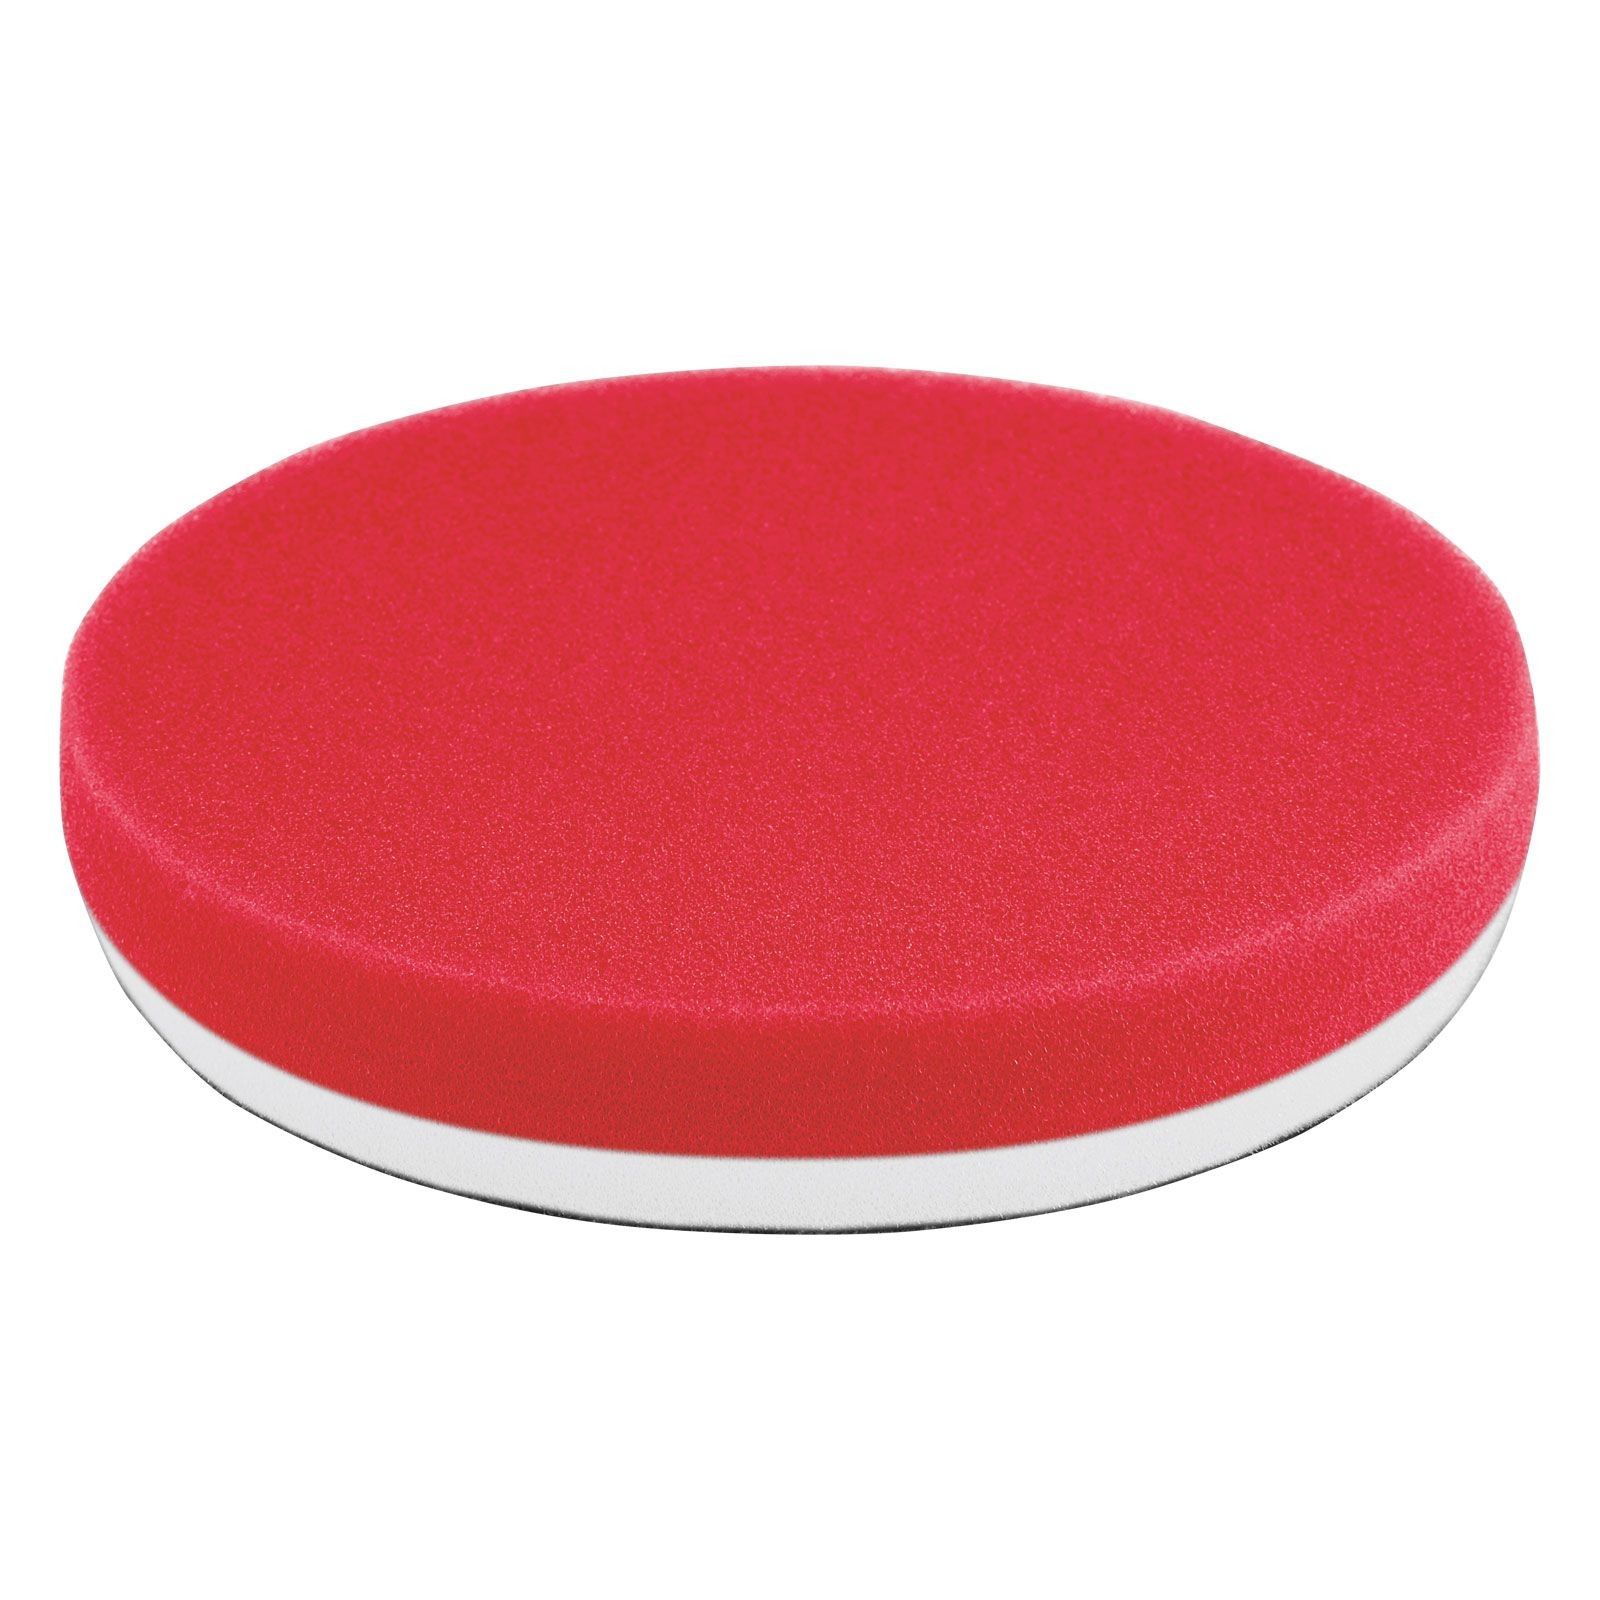 پد پولیش نرم قرمز سایز 160 میلی متری فلکس Flex Polishing Sponge Red Soft Foam 160mm